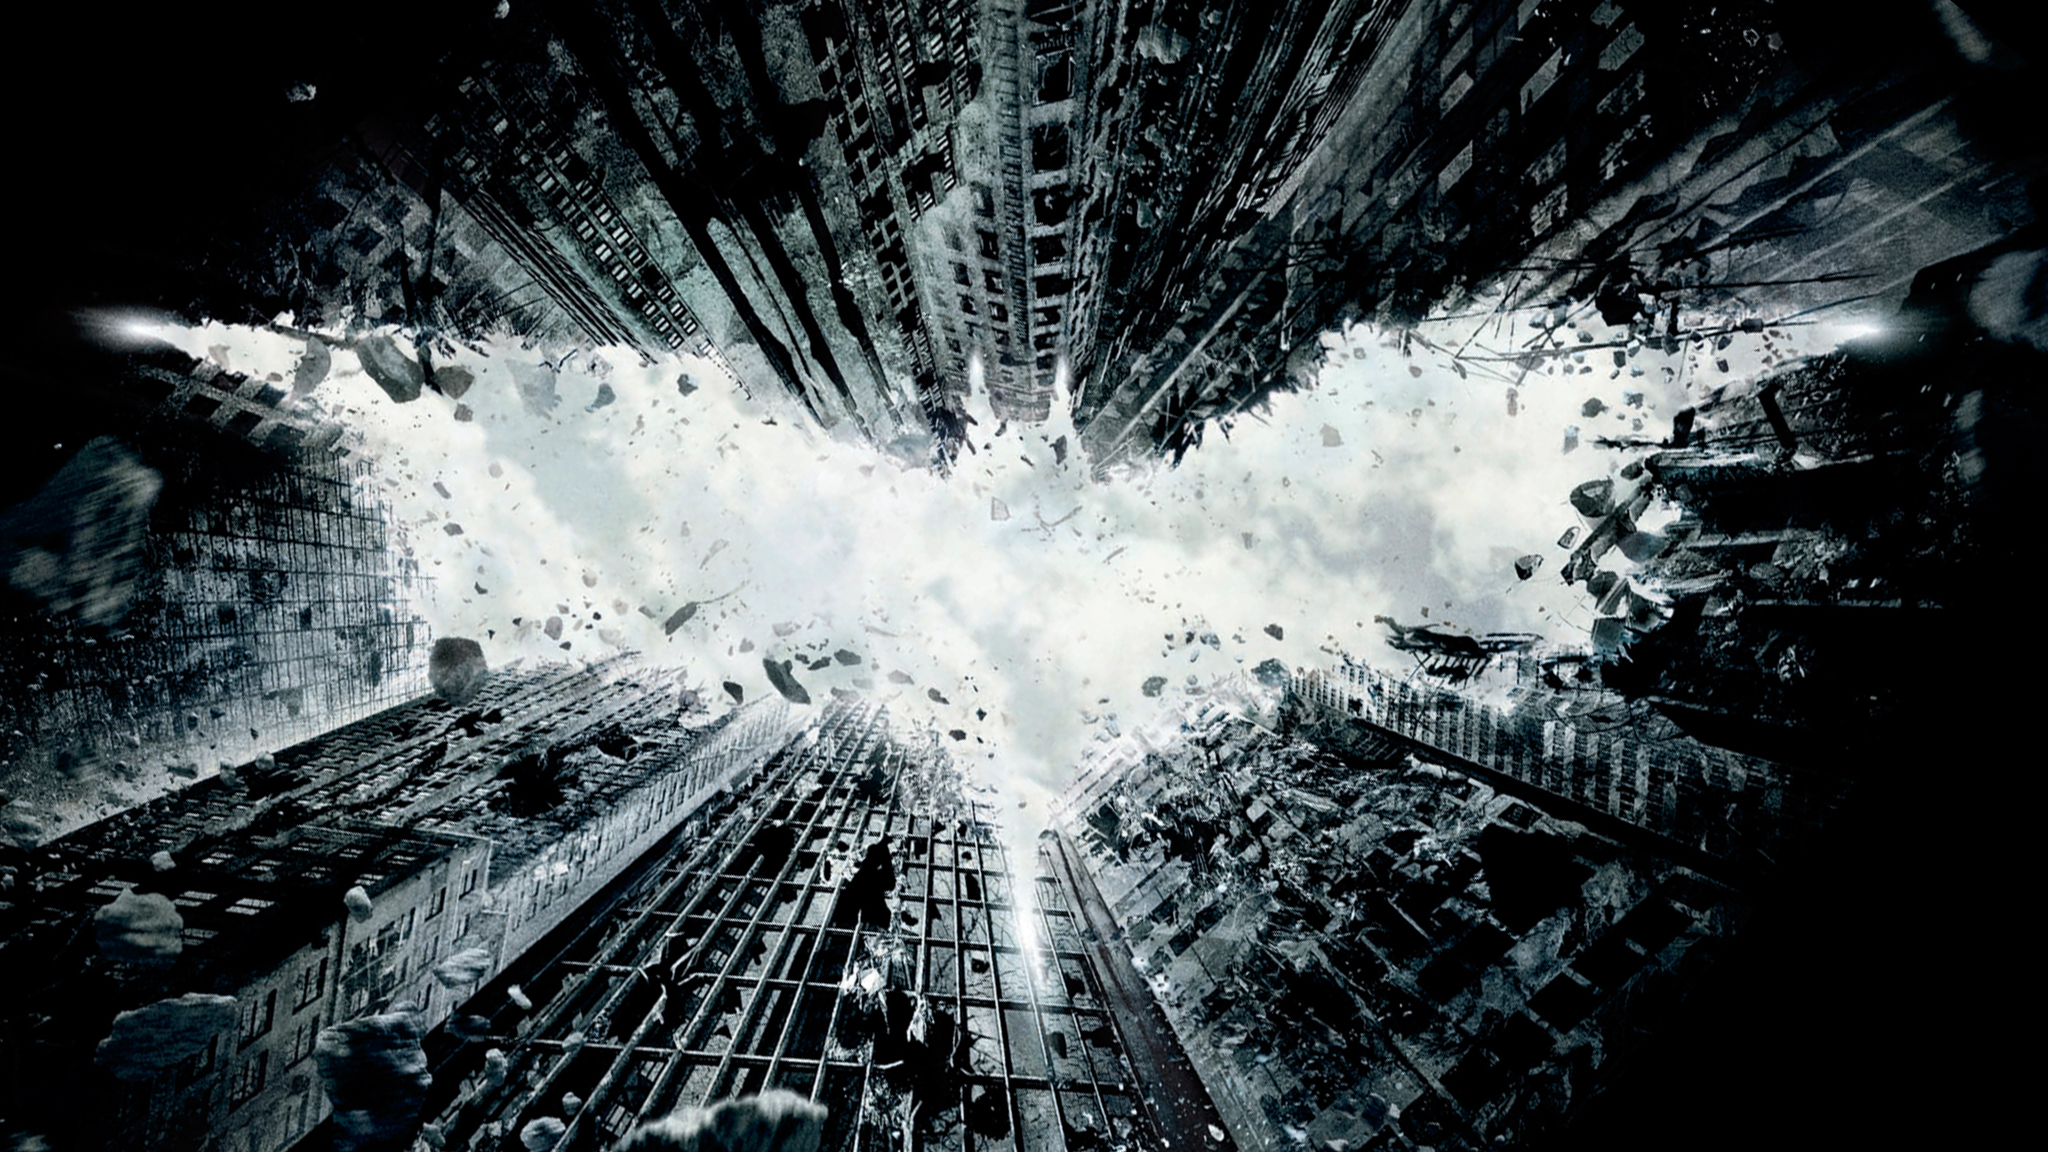 24 Batman Hd Wallpapers Backgrounds Wallpaper Abyss - Riset